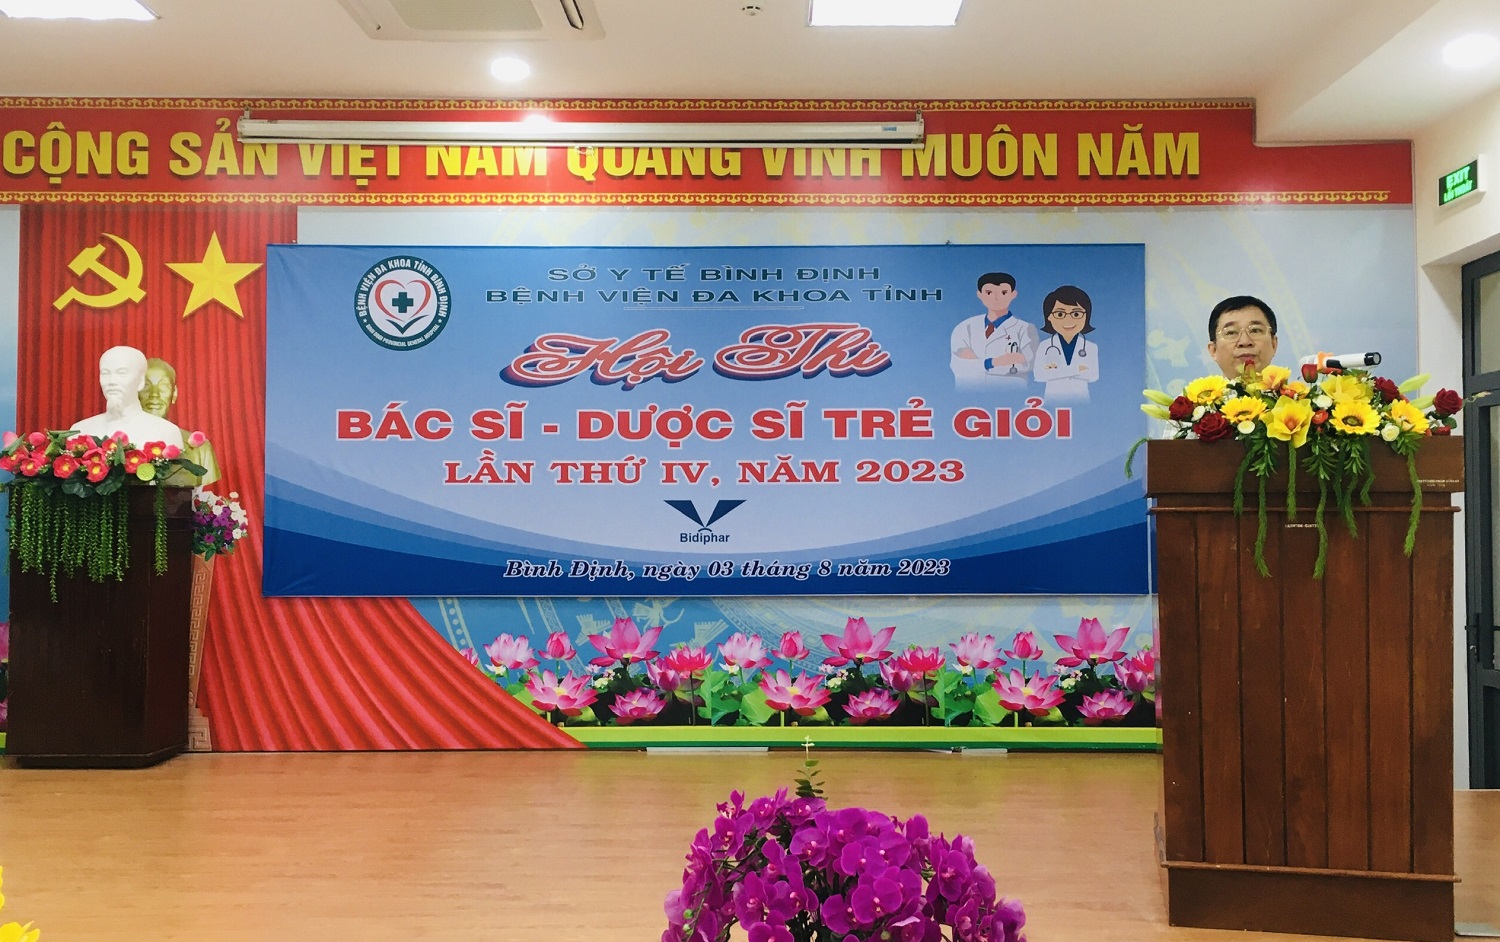 Ông Nguyễn Hoành Cường - Giám đốc BVĐK tỉnh khai mạc hội thi (Ảnh Thu Hiền)